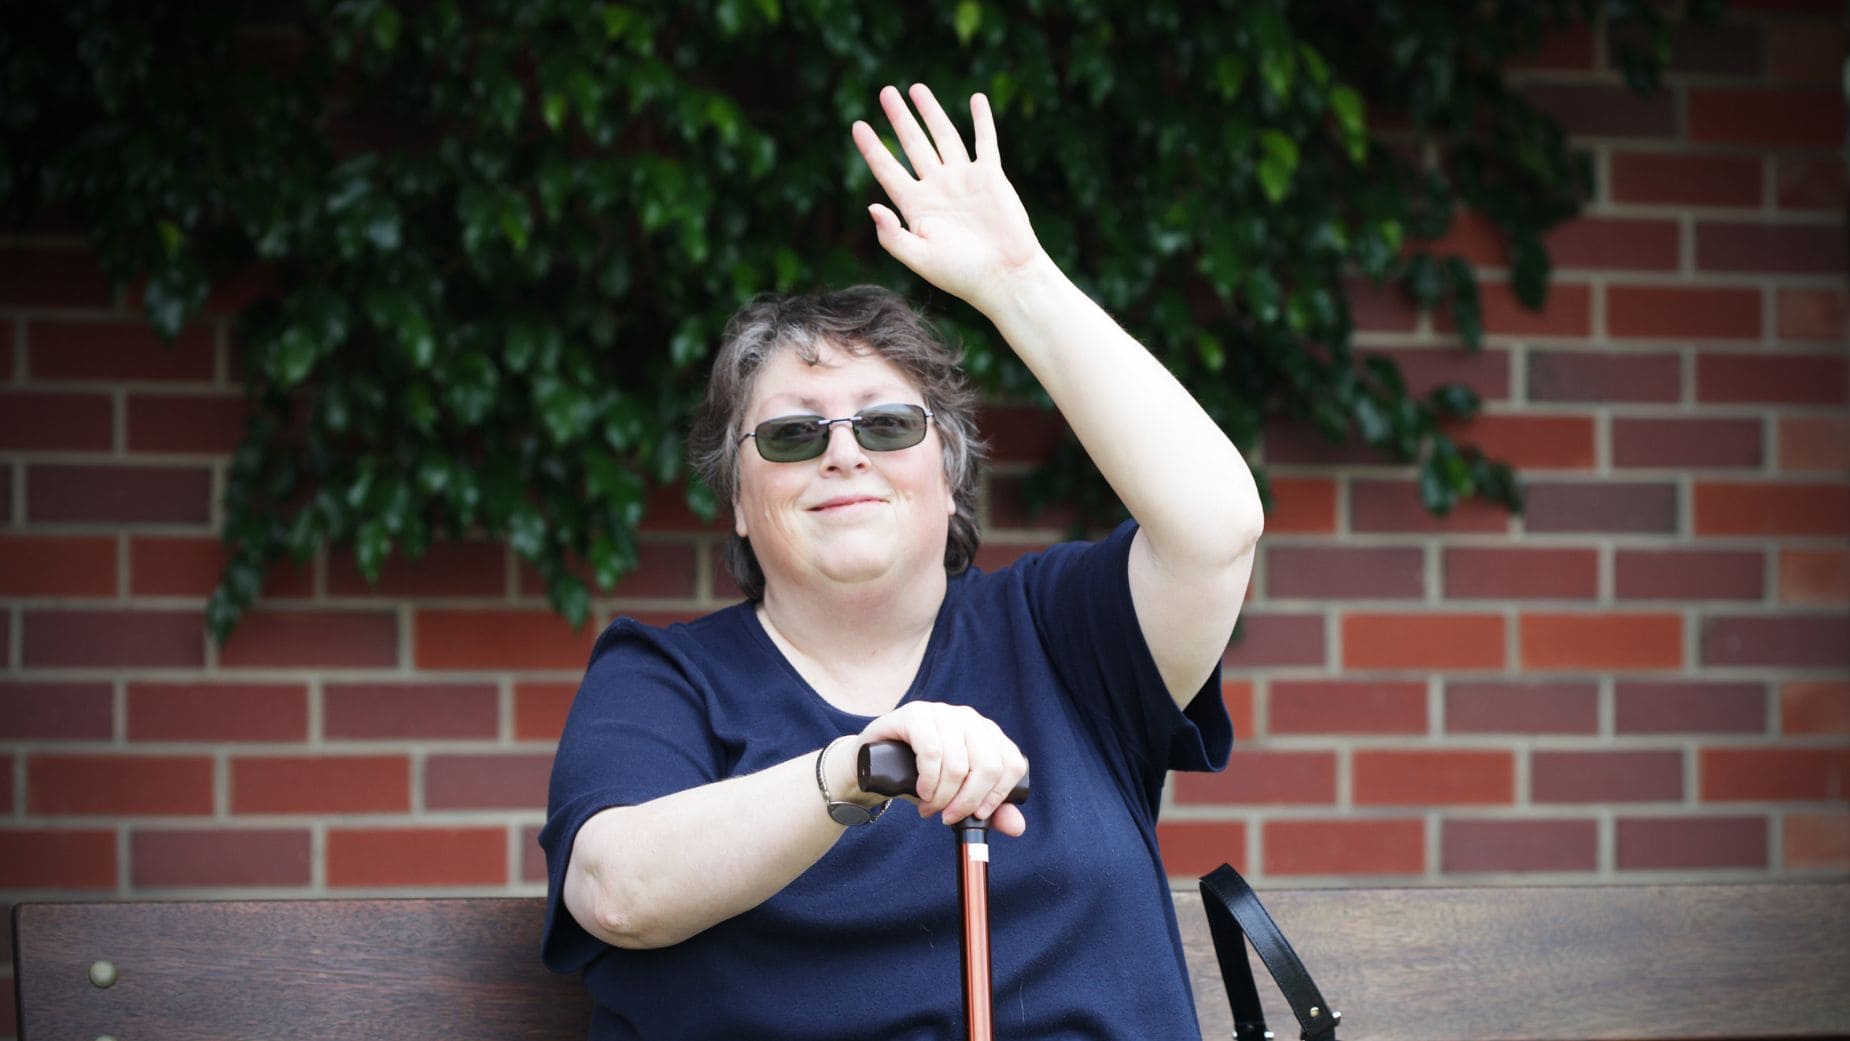 La personas con discapacidad pueden acceder a la jubilación anticipada antes de tiempo